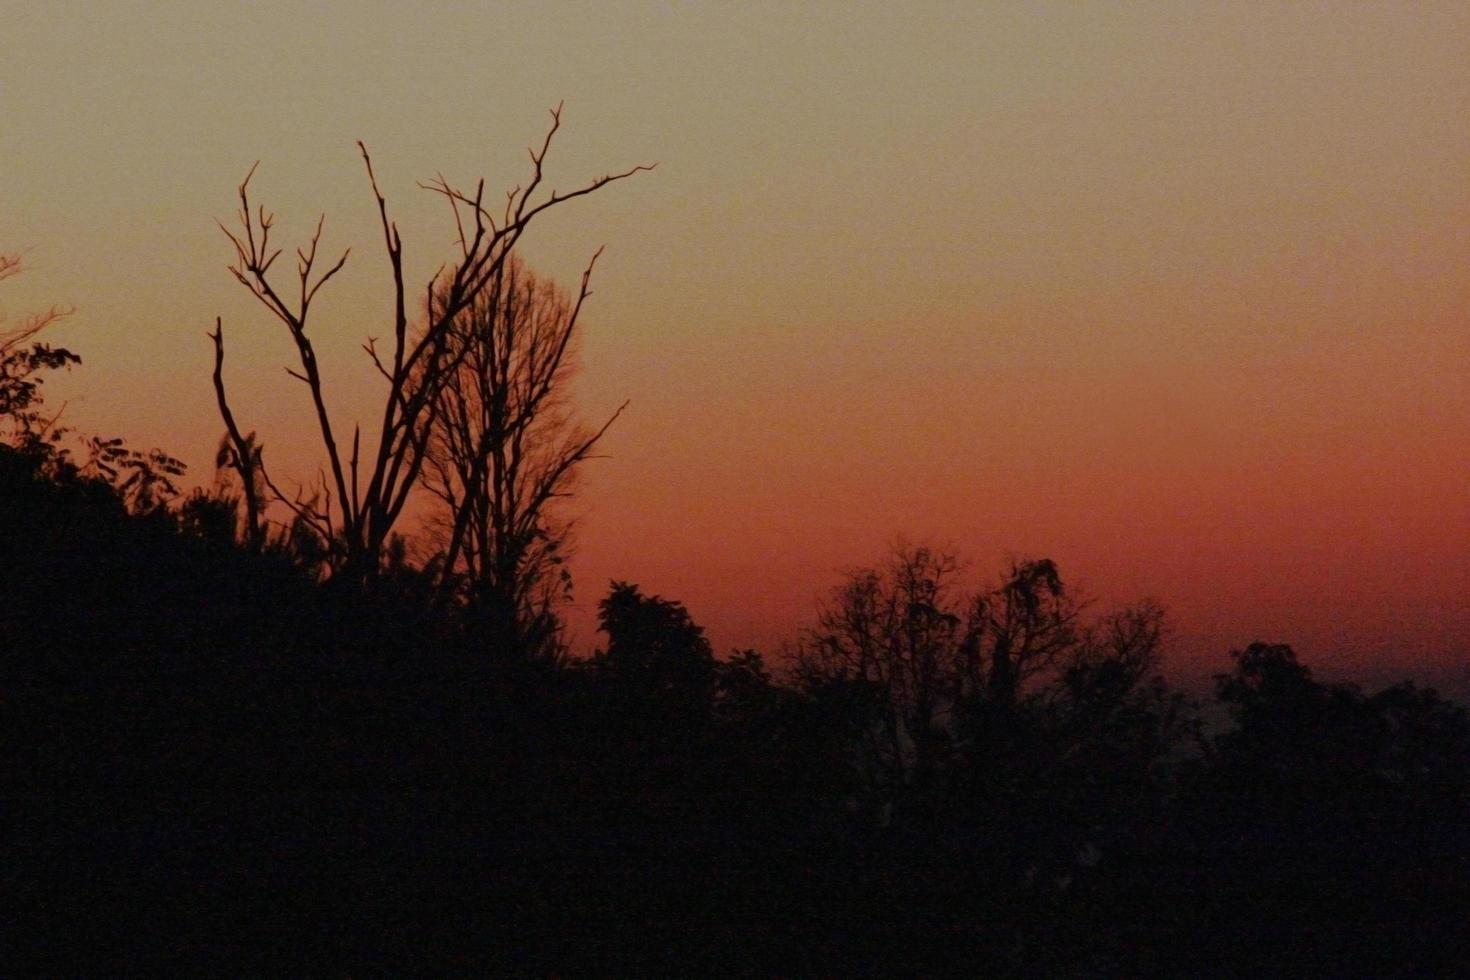 silhouette morto alberi morire nel il buio di tramonto e pauroso e cupola. haloween concetto. foto